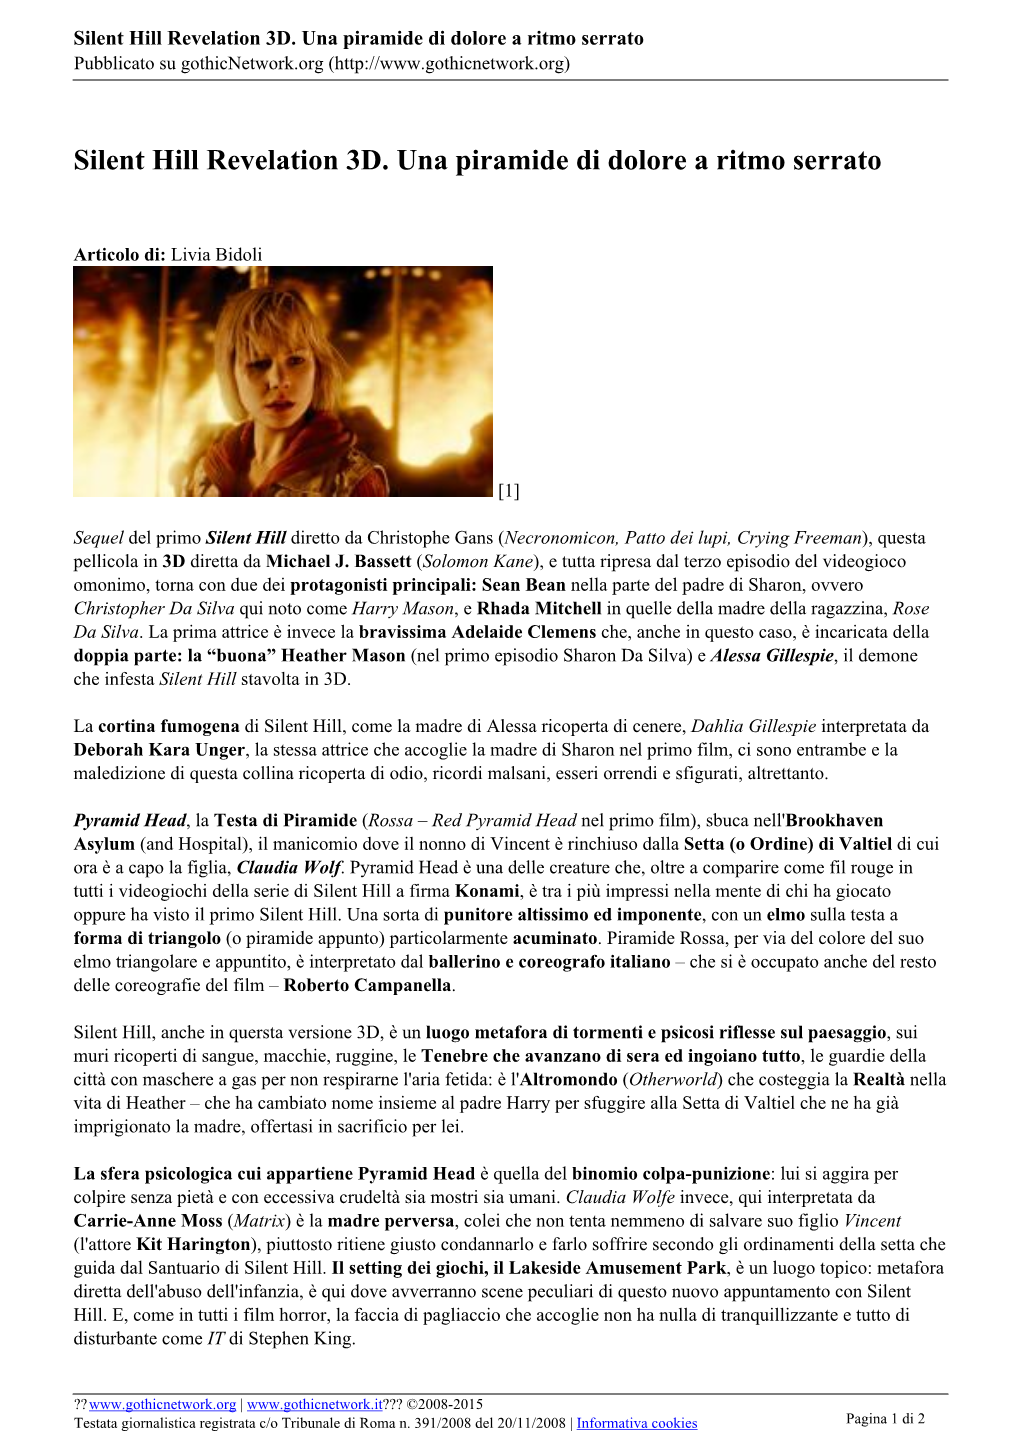 Silent Hill Revelation 3D. Una Piramide Di Dolore a Ritmo Serrato Pubblicato Su Gothicnetwork.Org (